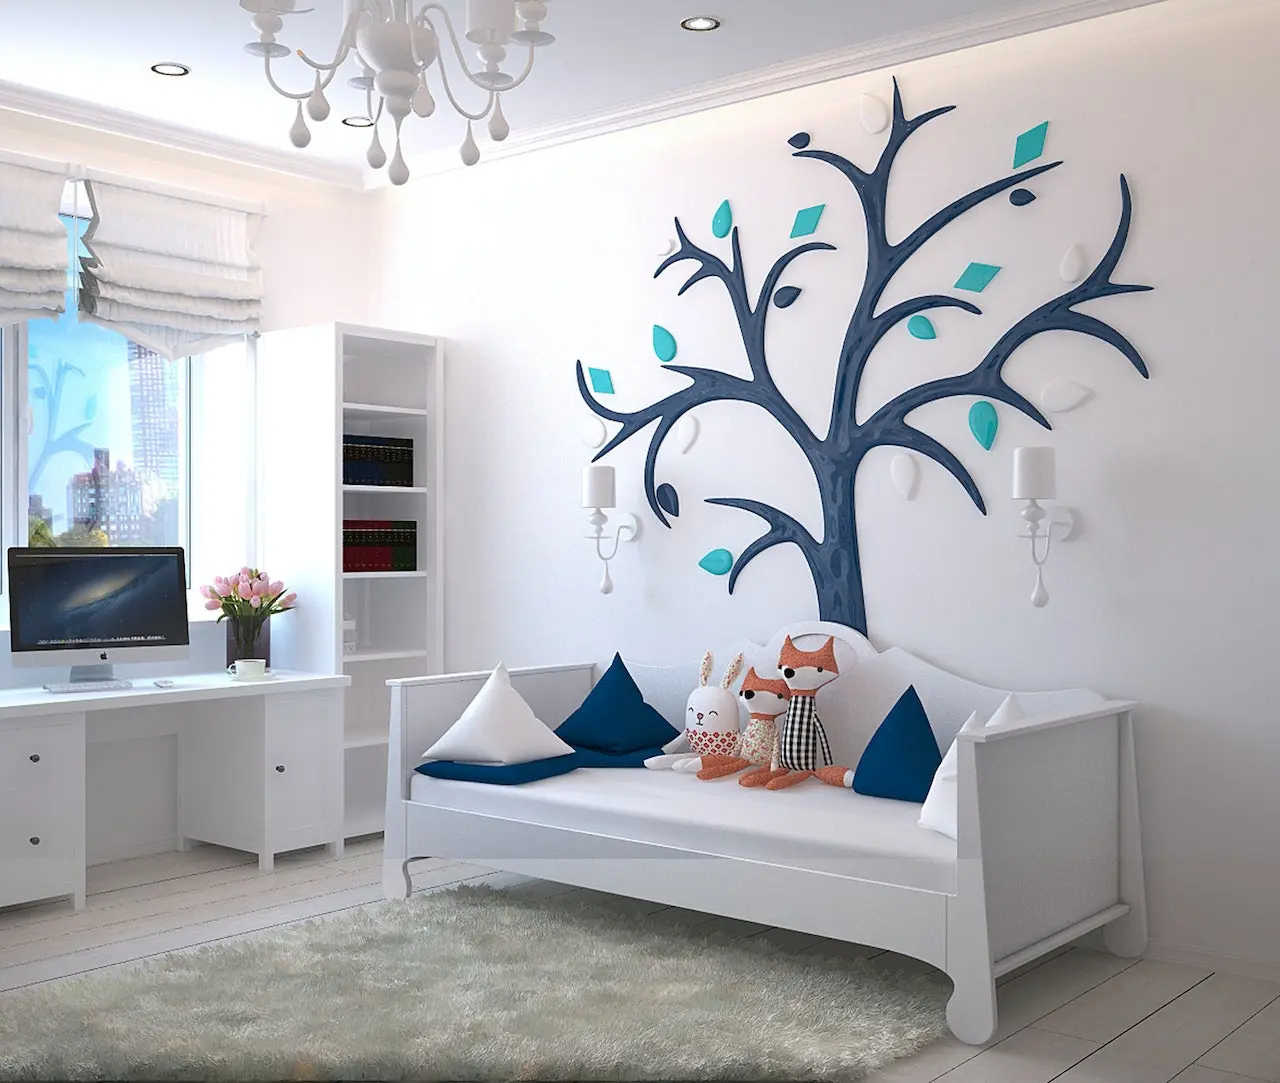 اتاق کودکی که ست مبل و میز آن و دکور آن سفید میباشد و طرح درخت بر روی دیوار پیاده شده است